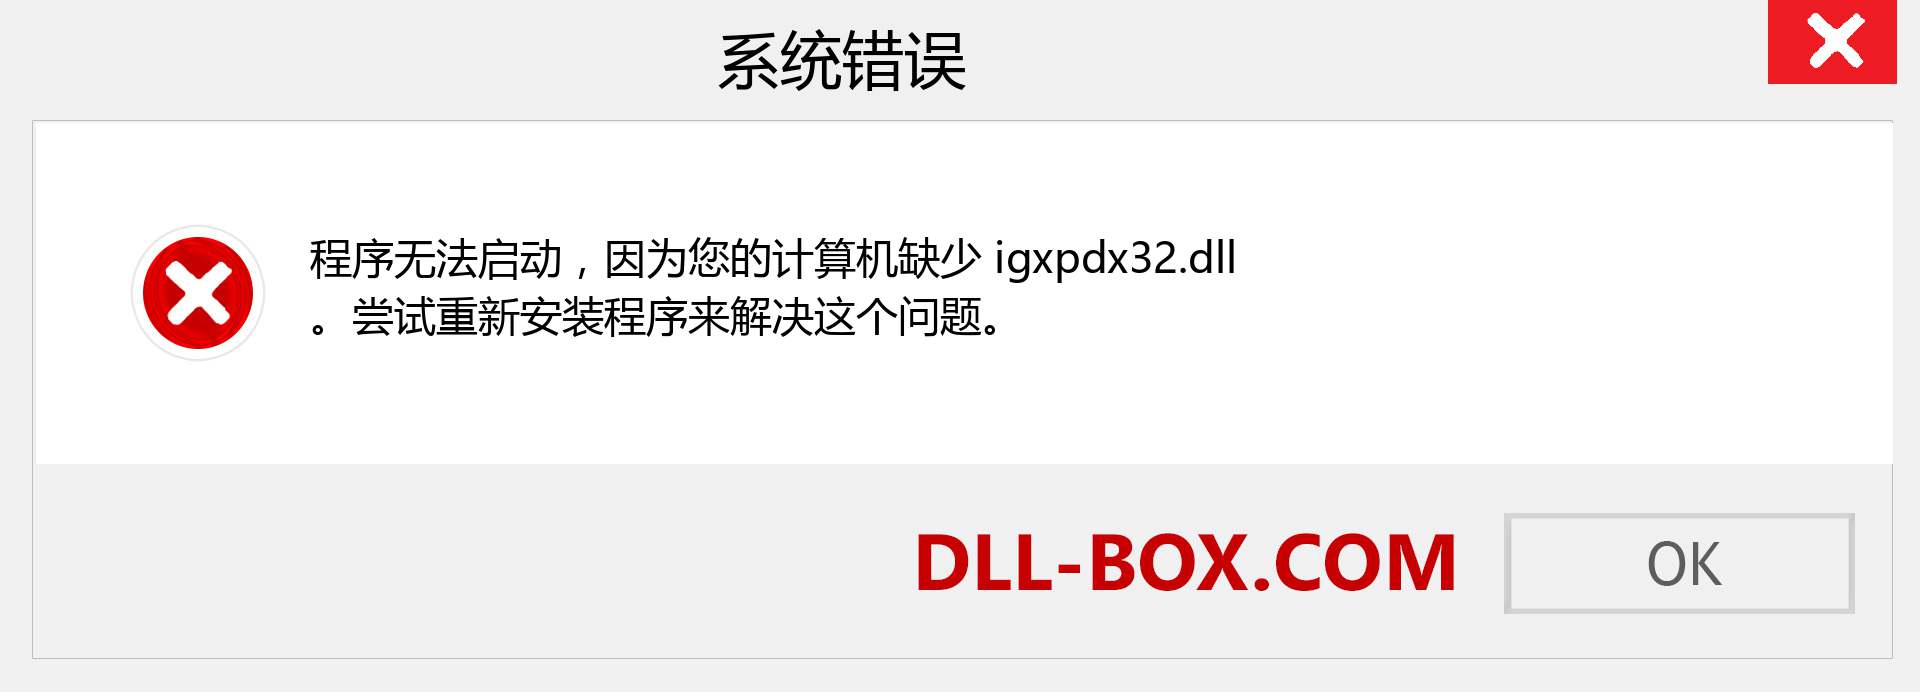 igxpdx32.dll 文件丢失？。 适用于 Windows 7、8、10 的下载 - 修复 Windows、照片、图像上的 igxpdx32 dll 丢失错误